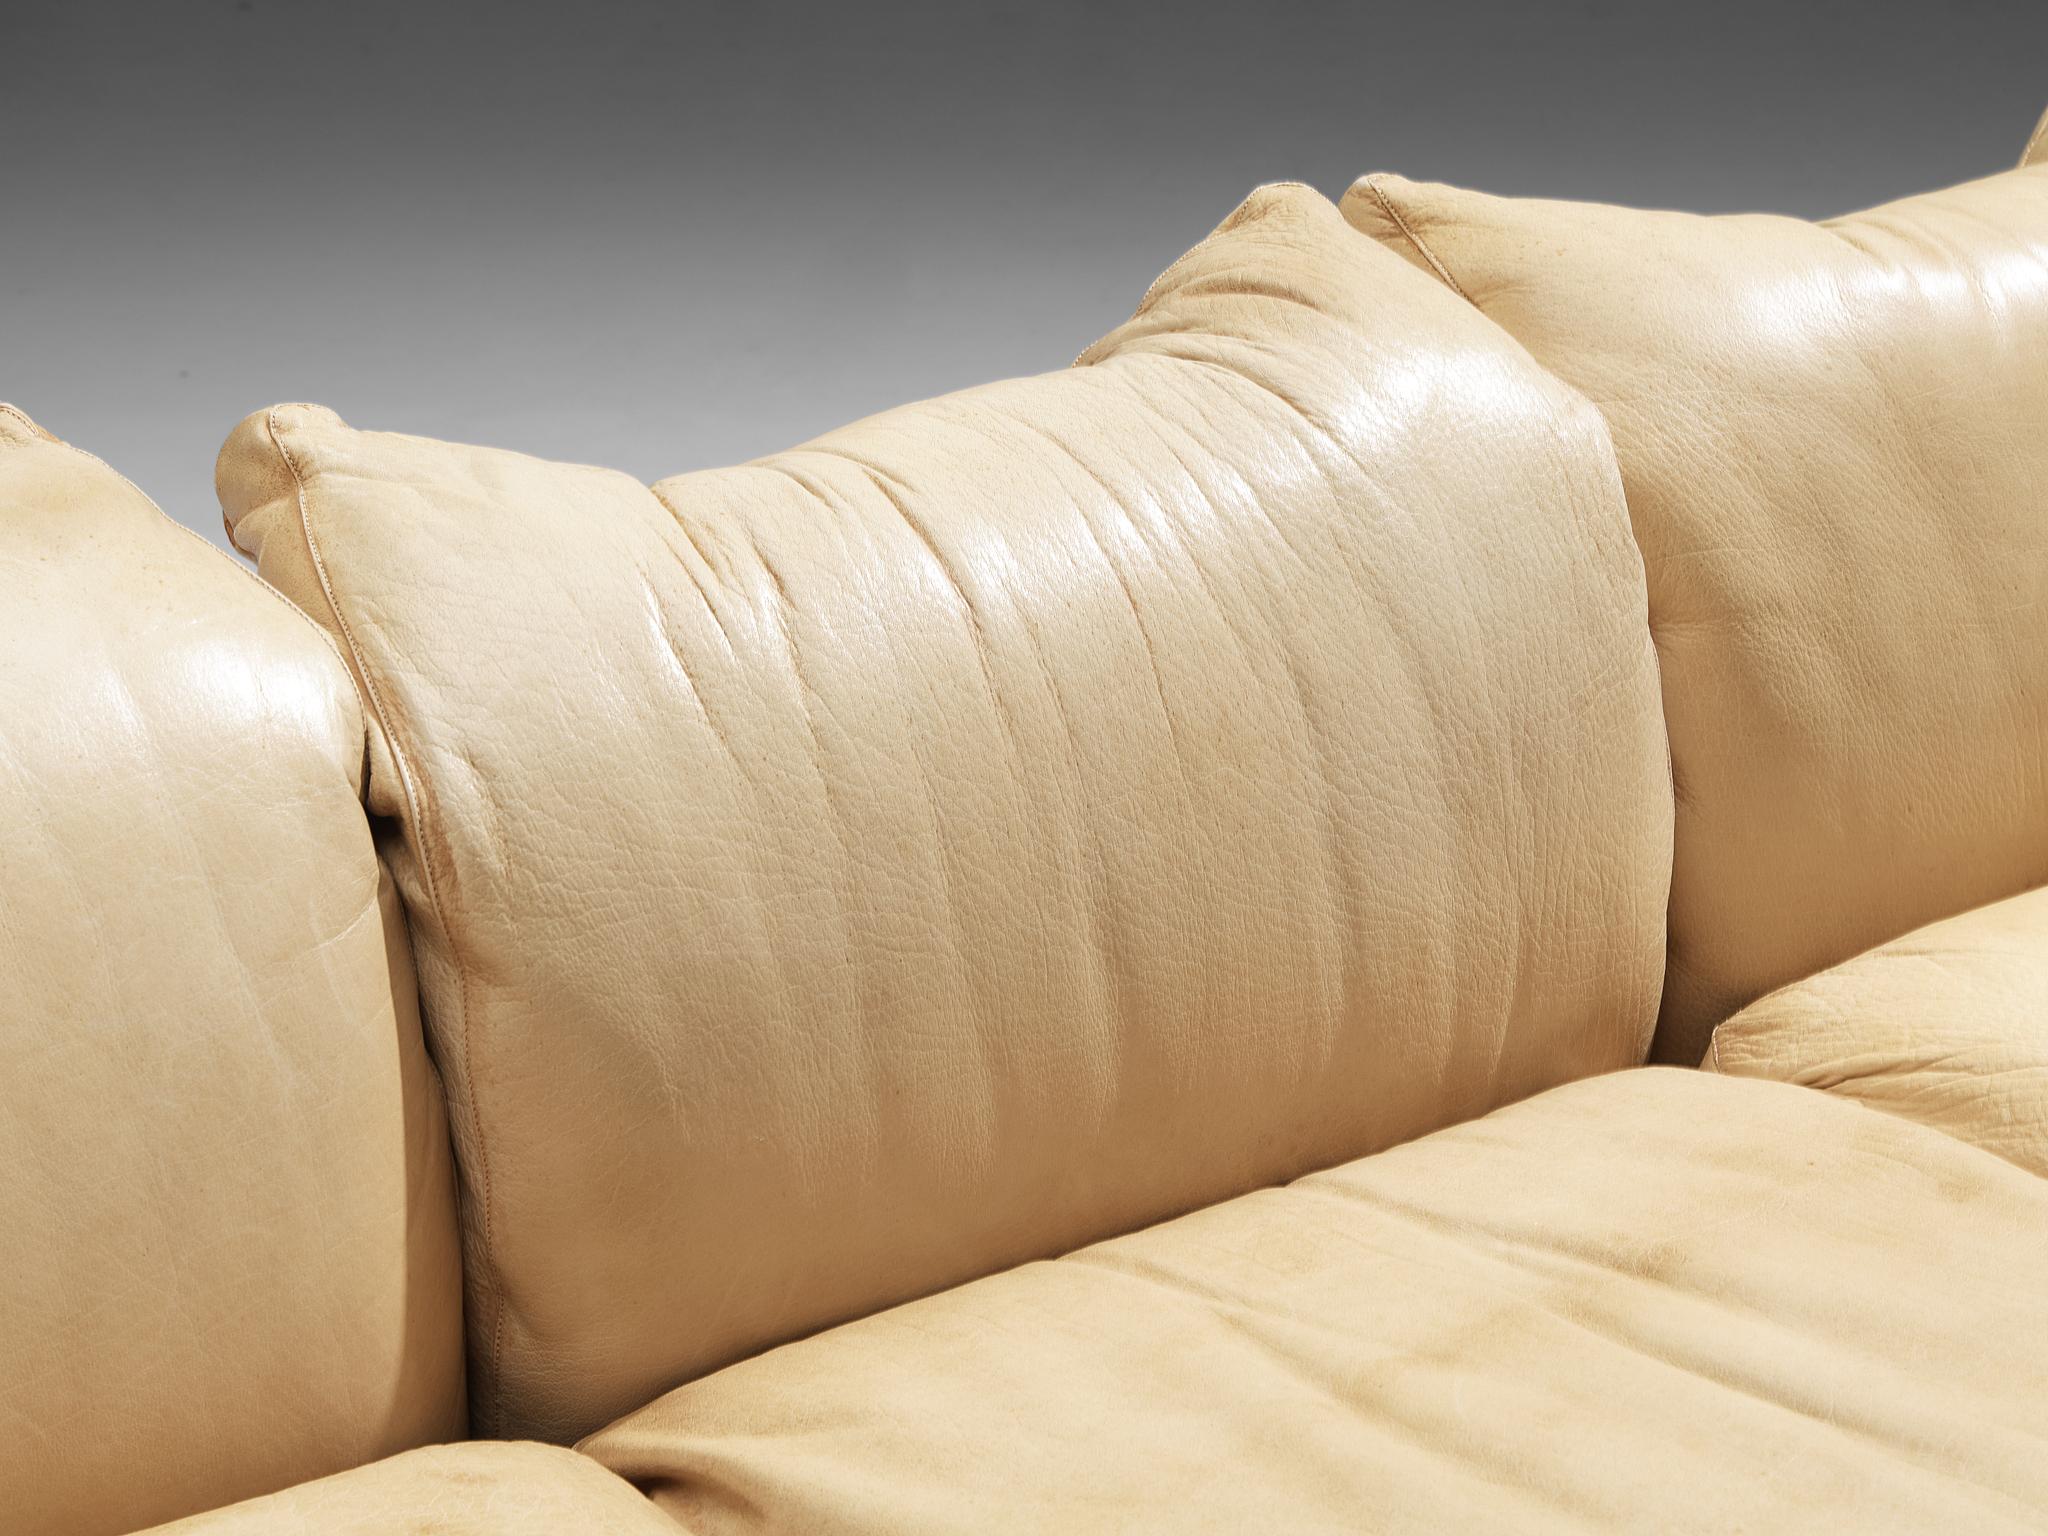 Italian De Pas, D’Urbino & Lomazzi for Poltronova 'PITTI' Sofa in Beige Leather